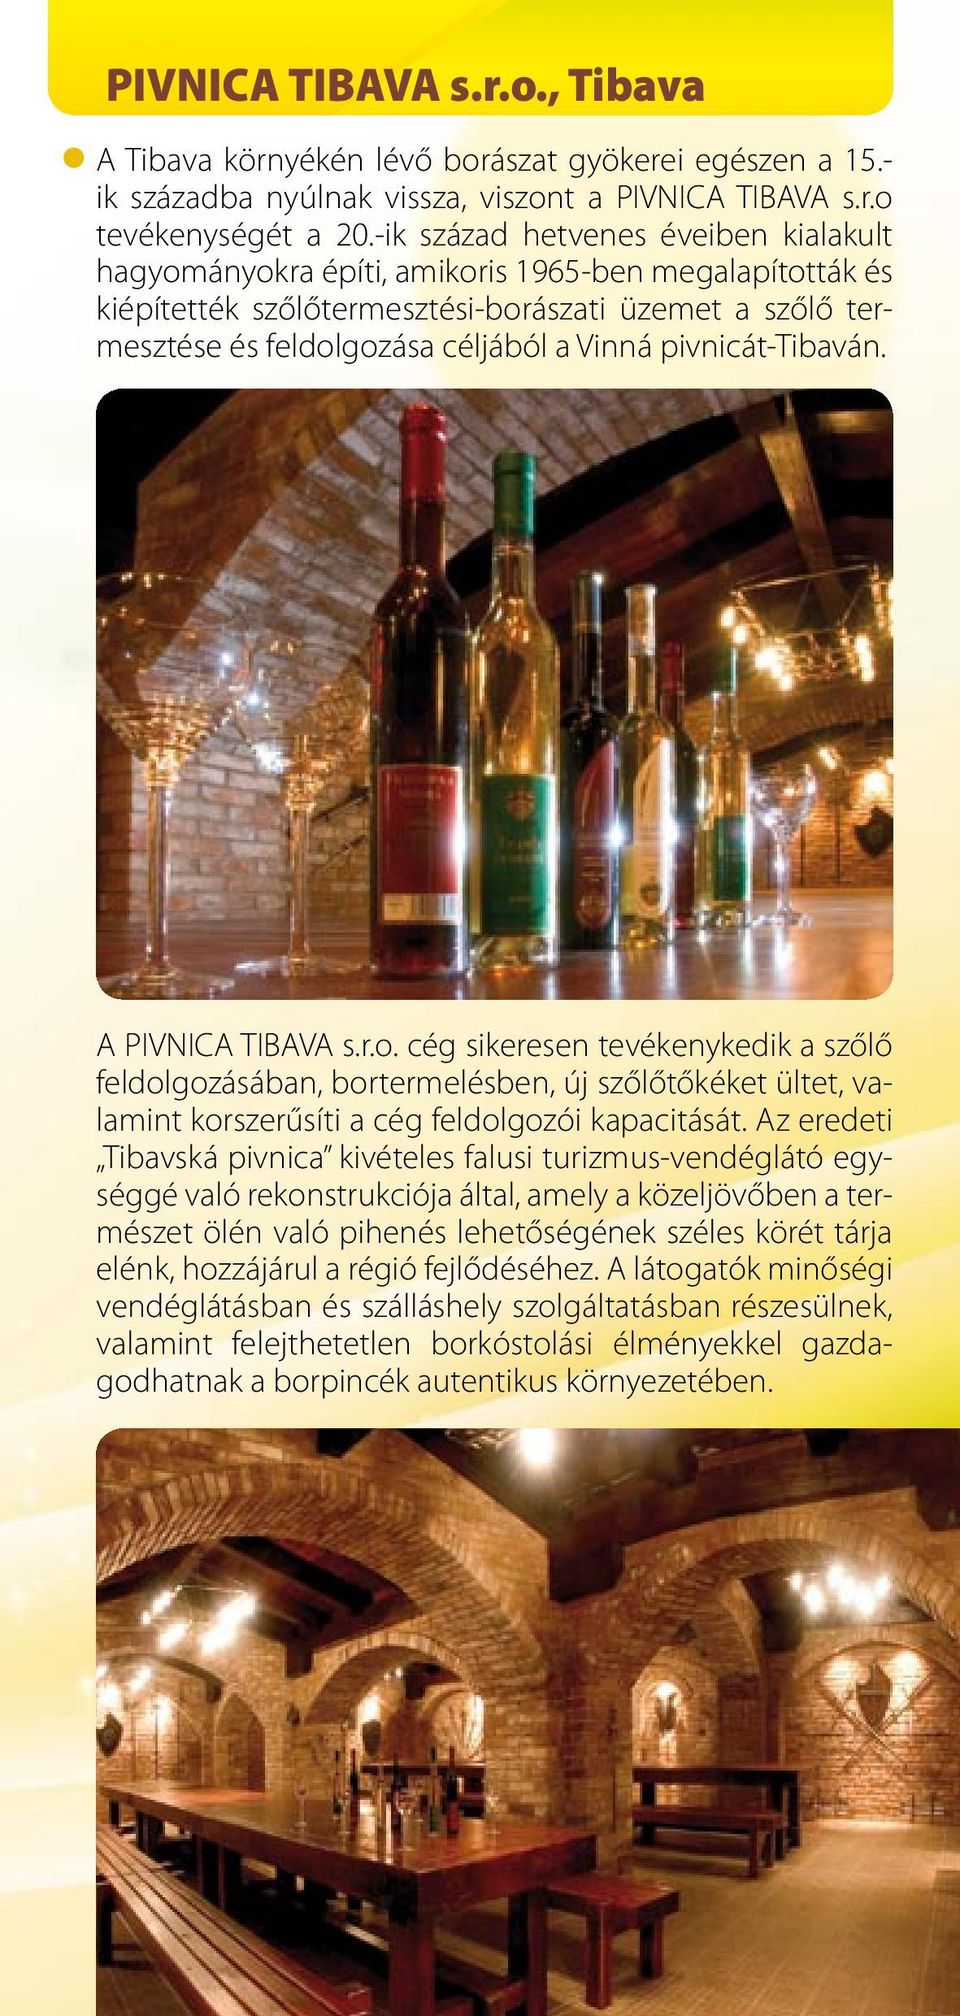 pivnicát-tibaván. A PIVNICA TIBAVA s.r.o. cég sikeresen tevékenykedik a szőlő feldolgozásában, bortermelésben, új szőlőtőkéket ültet, valamint korszerűsíti a cég feldolgozói kapacitását.